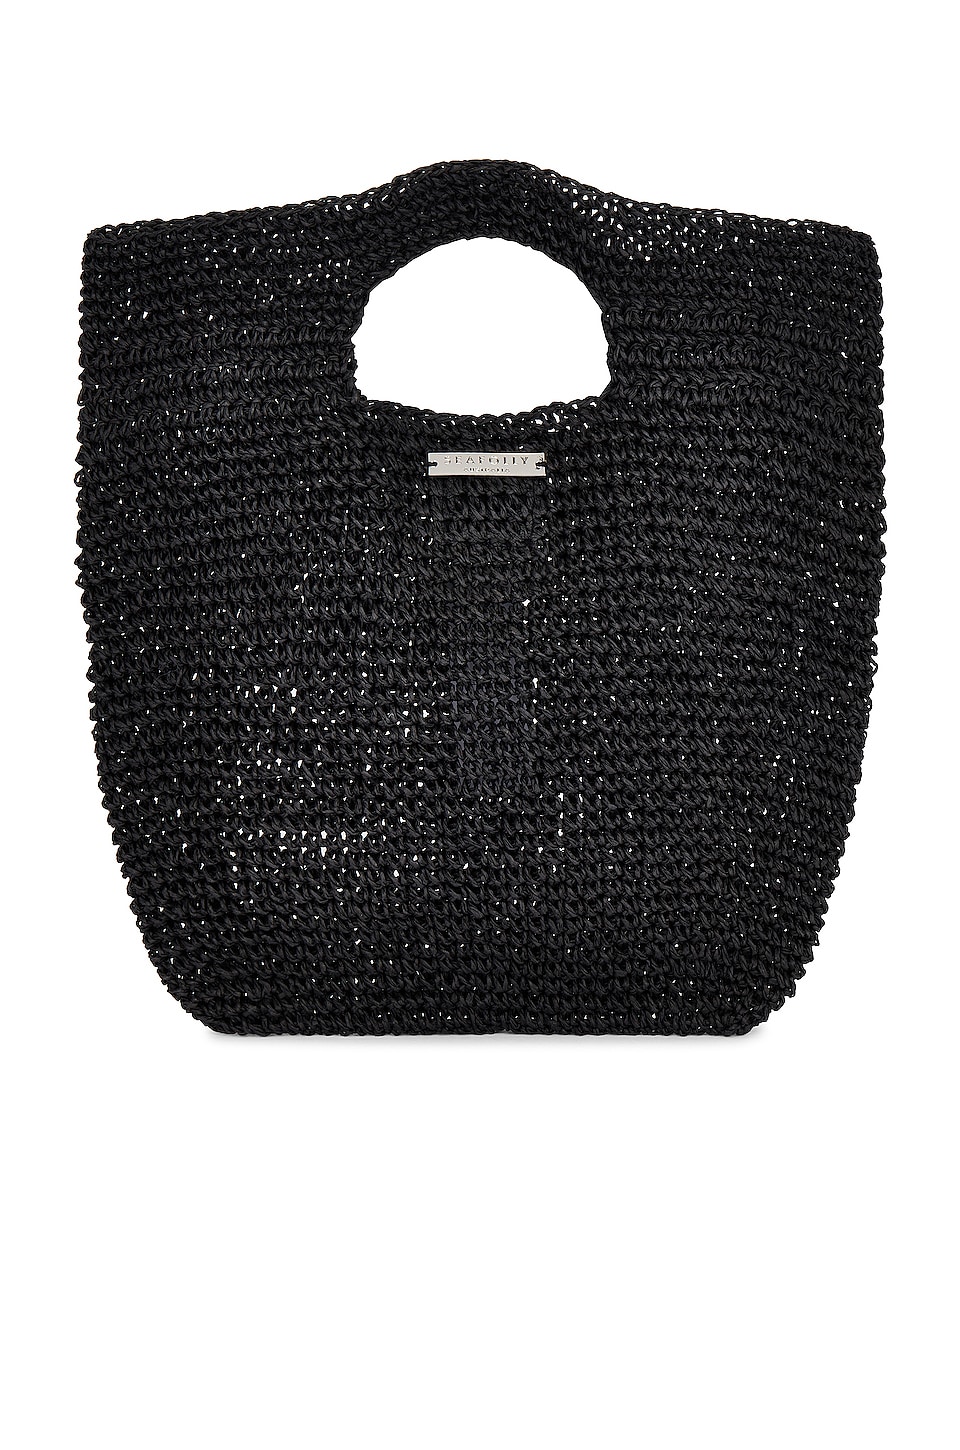 Seafolly Sierra Mini Bag in Black | REVOLVE